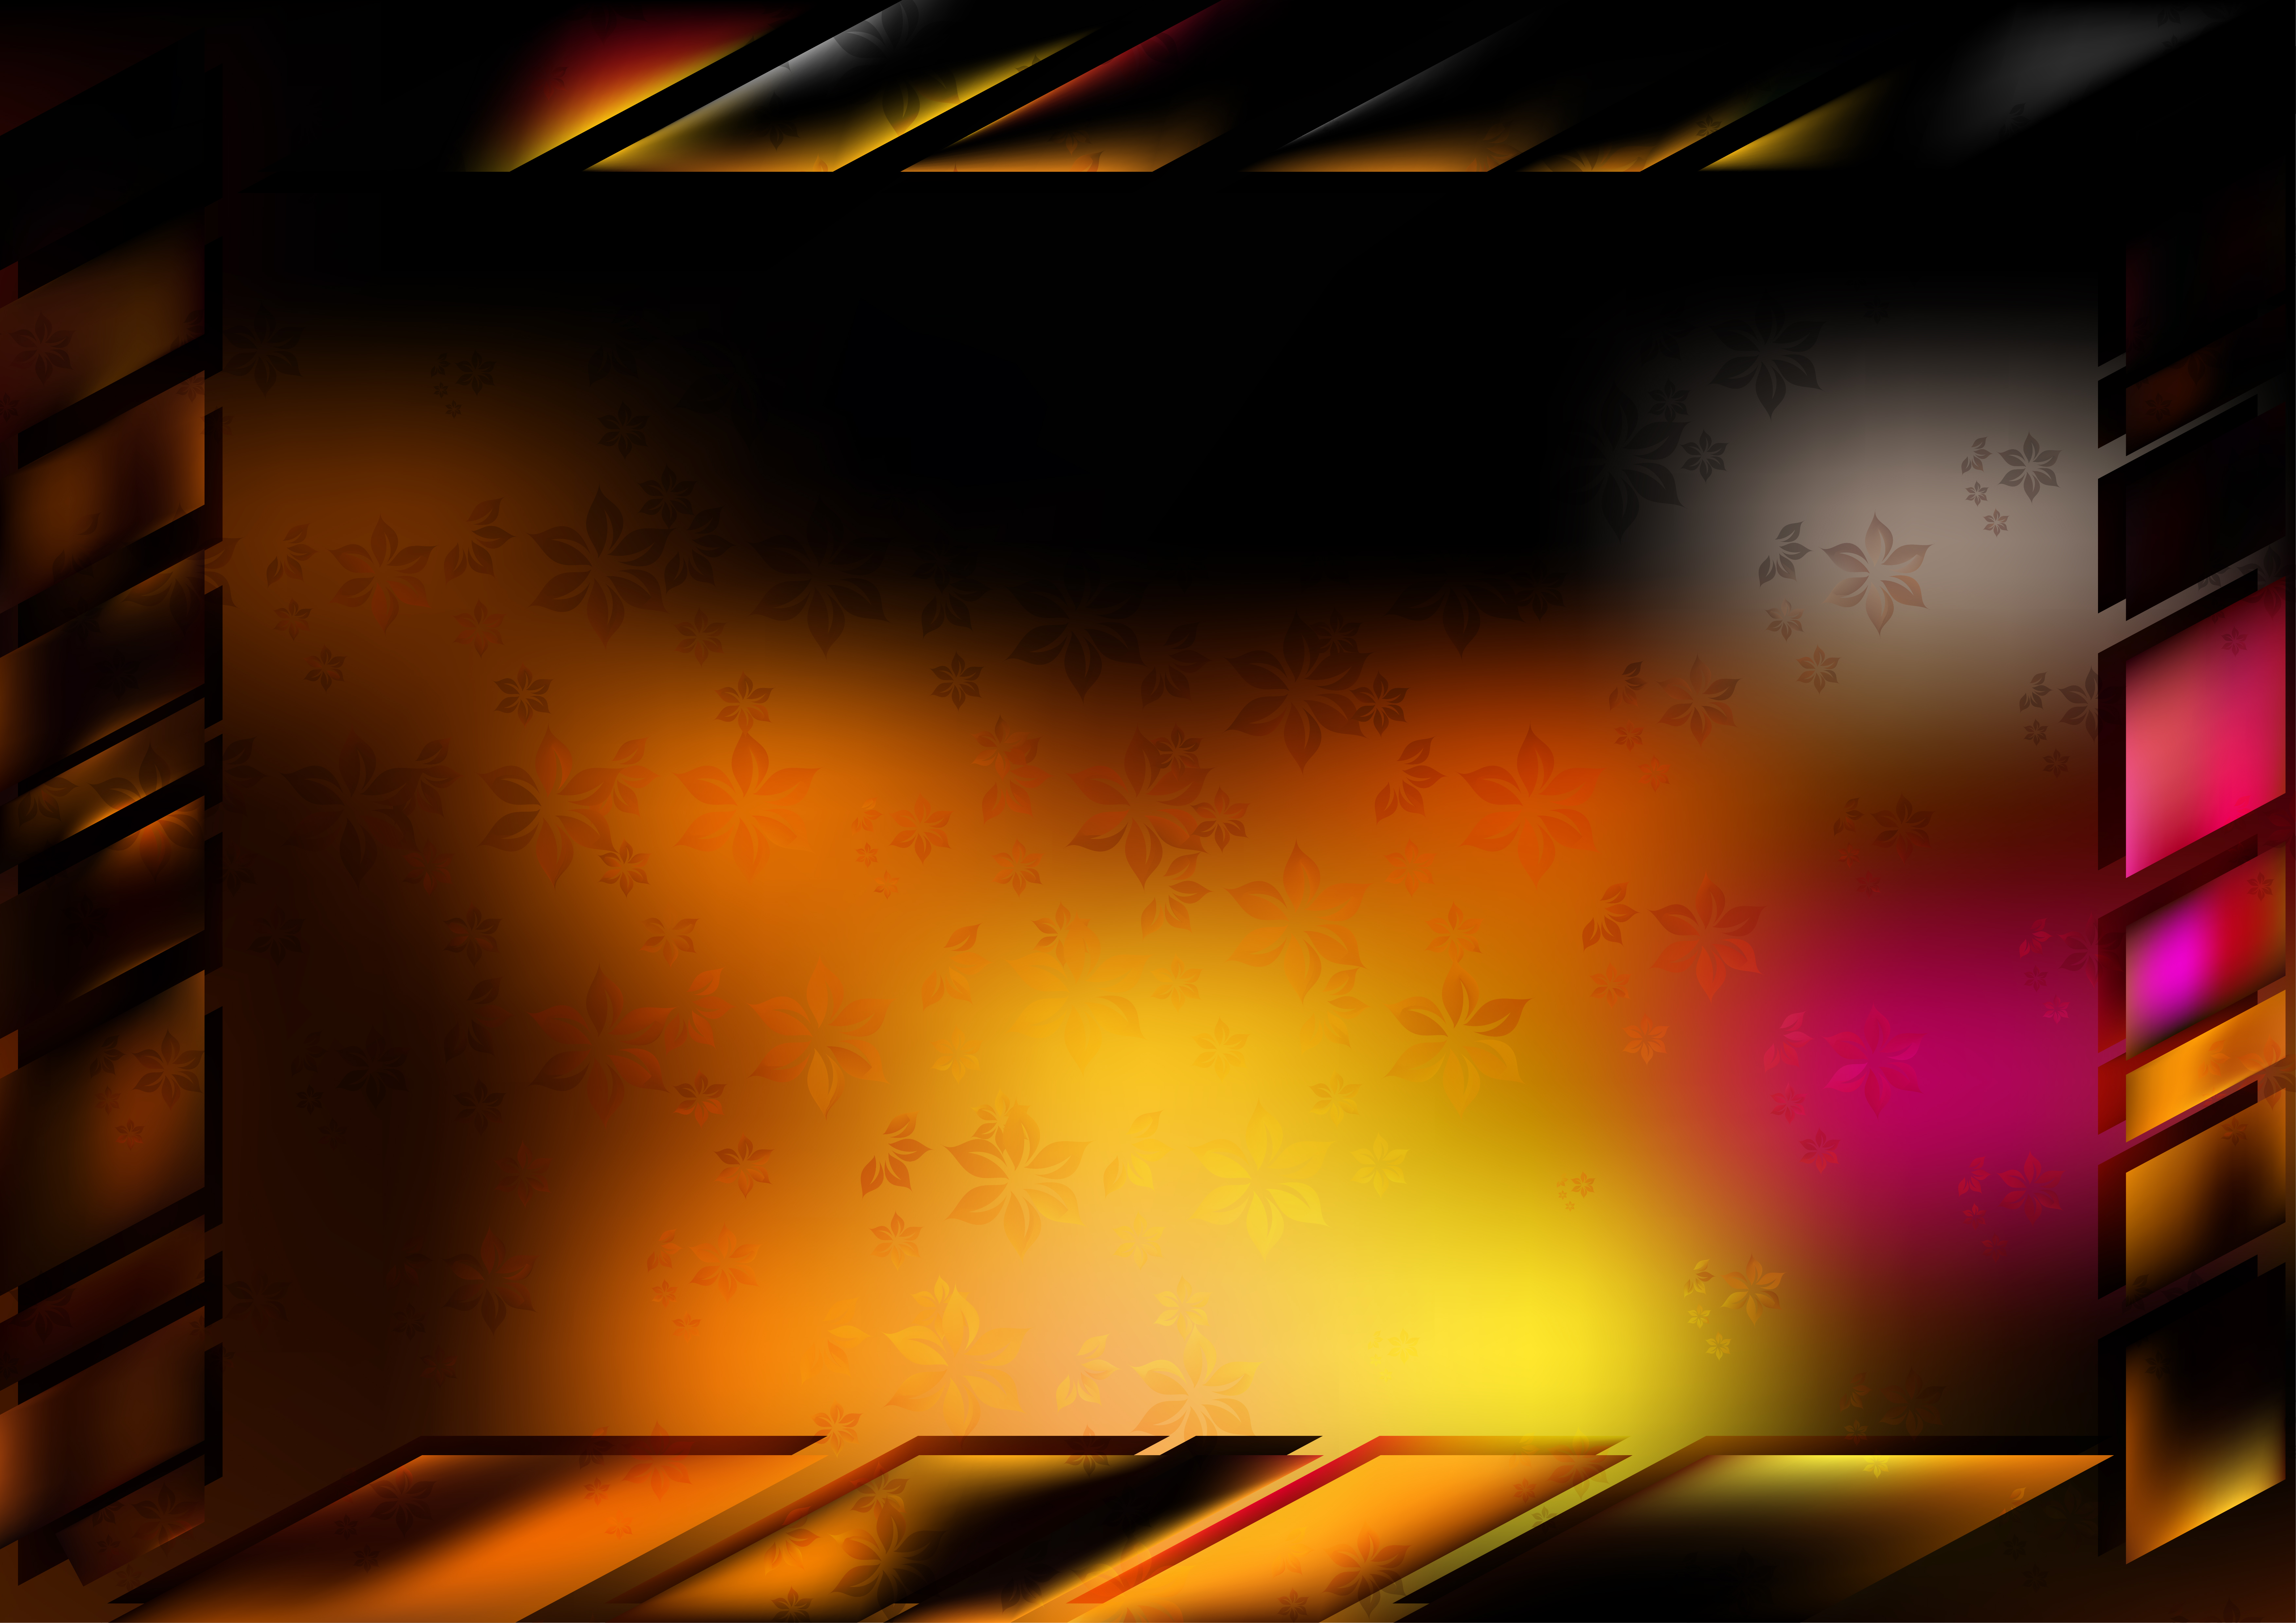 Free Pink Orange and Black Frame Background Vector Art